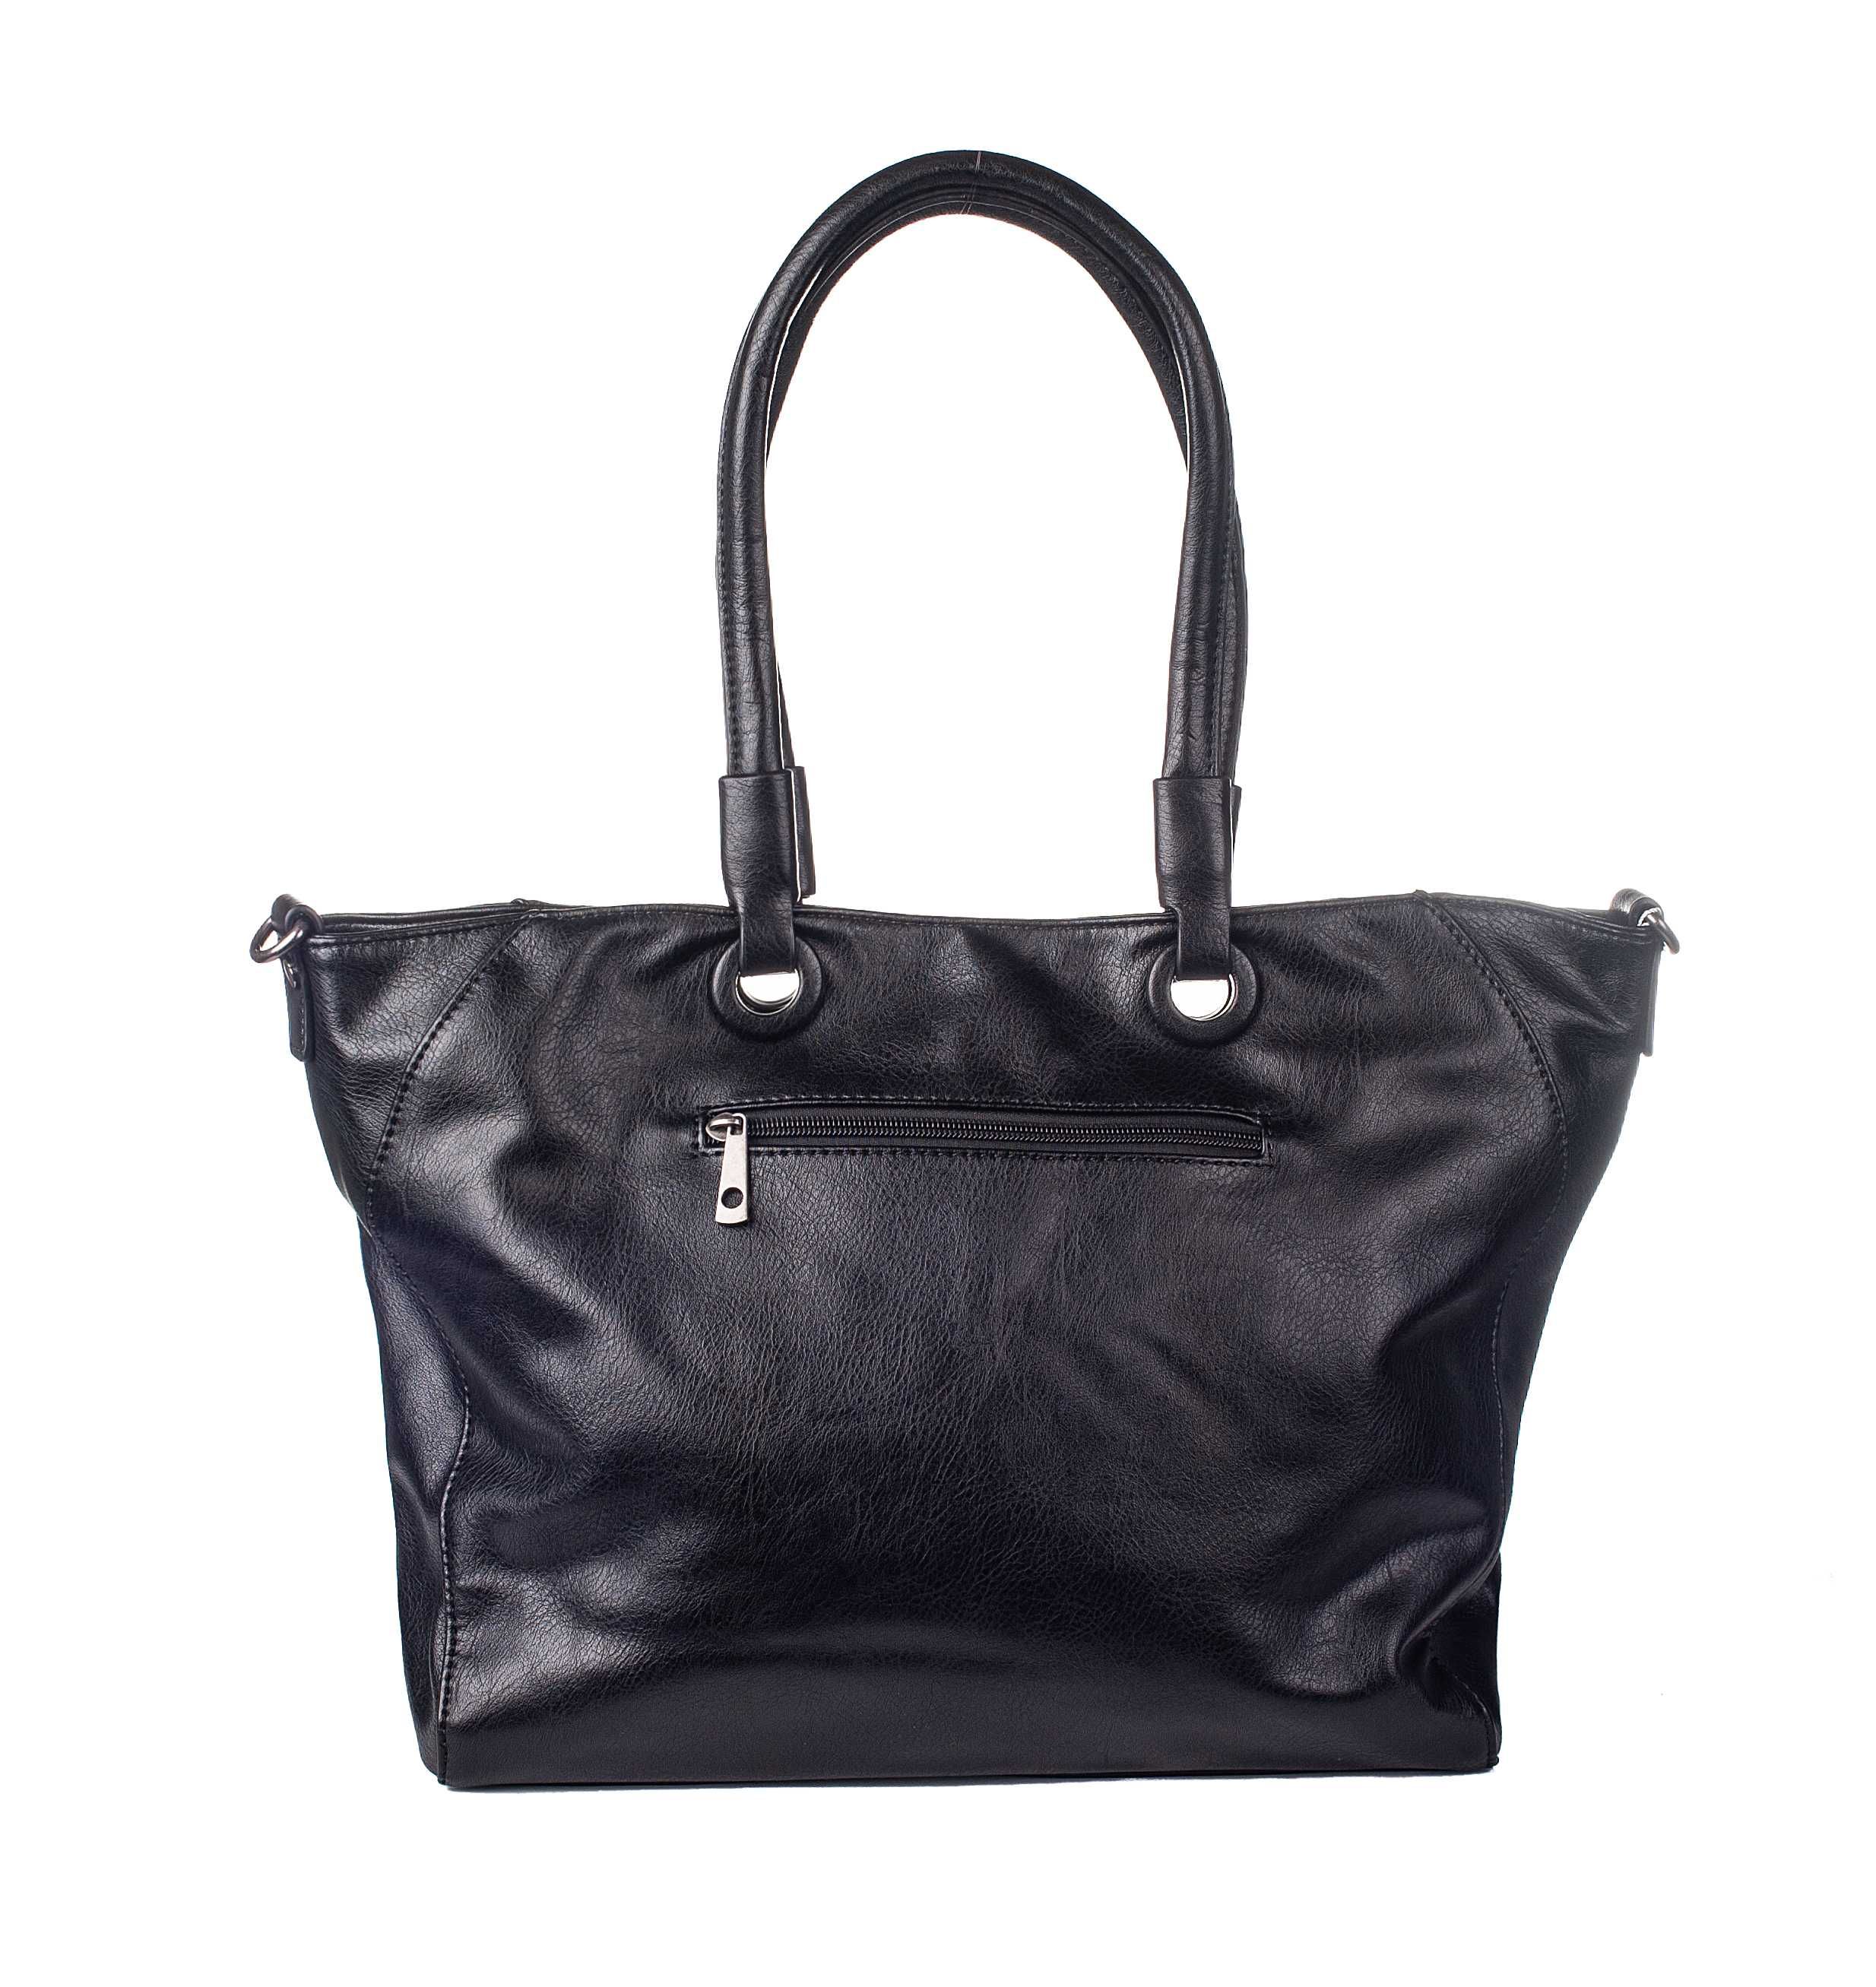 Czarna torebka damska z możliwością pomniejszenia, shopper